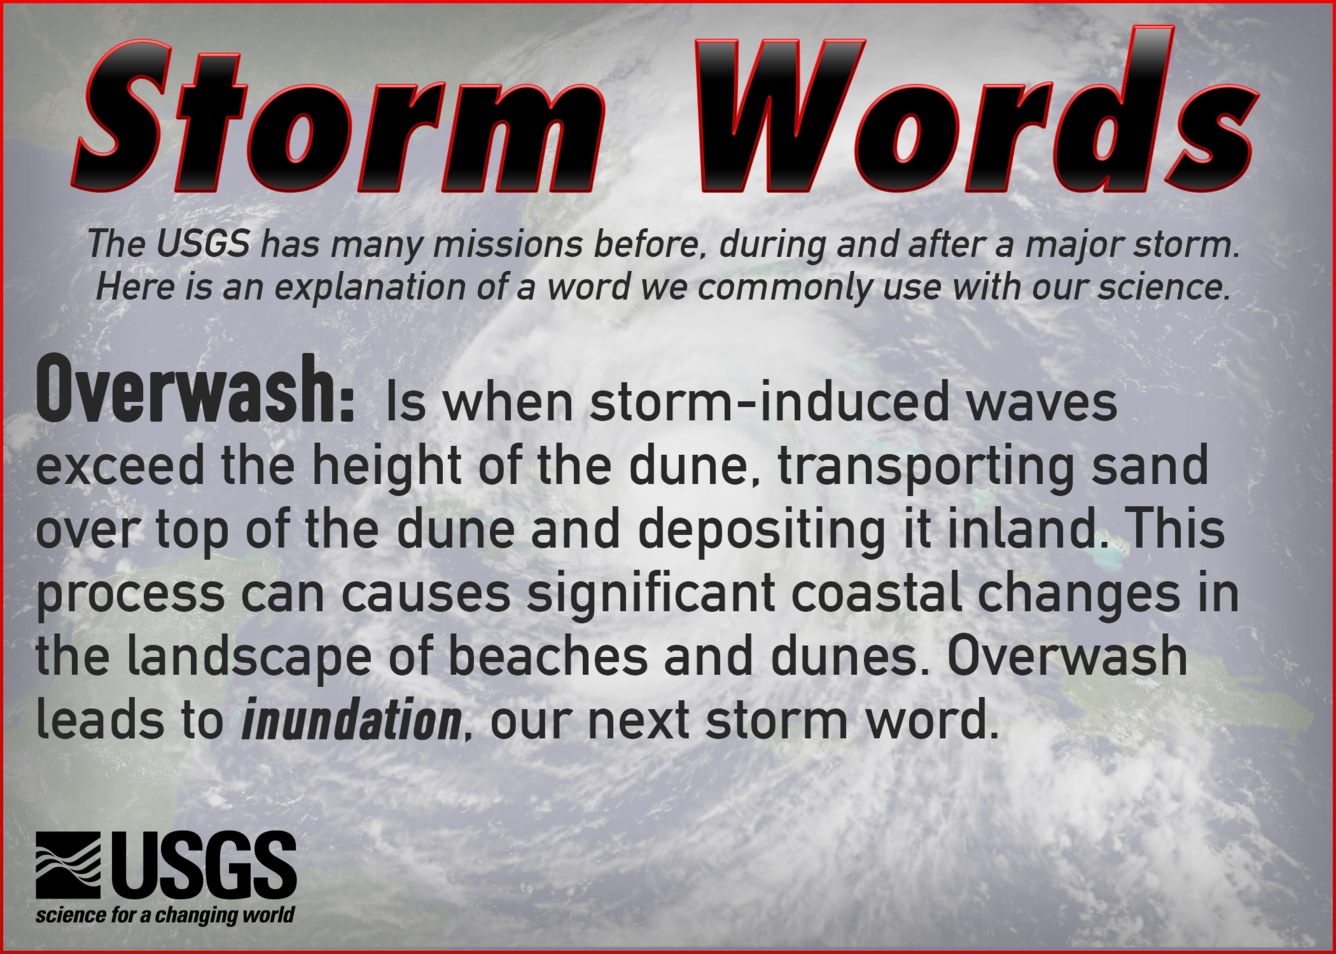 USGS Storm Words: Overwash